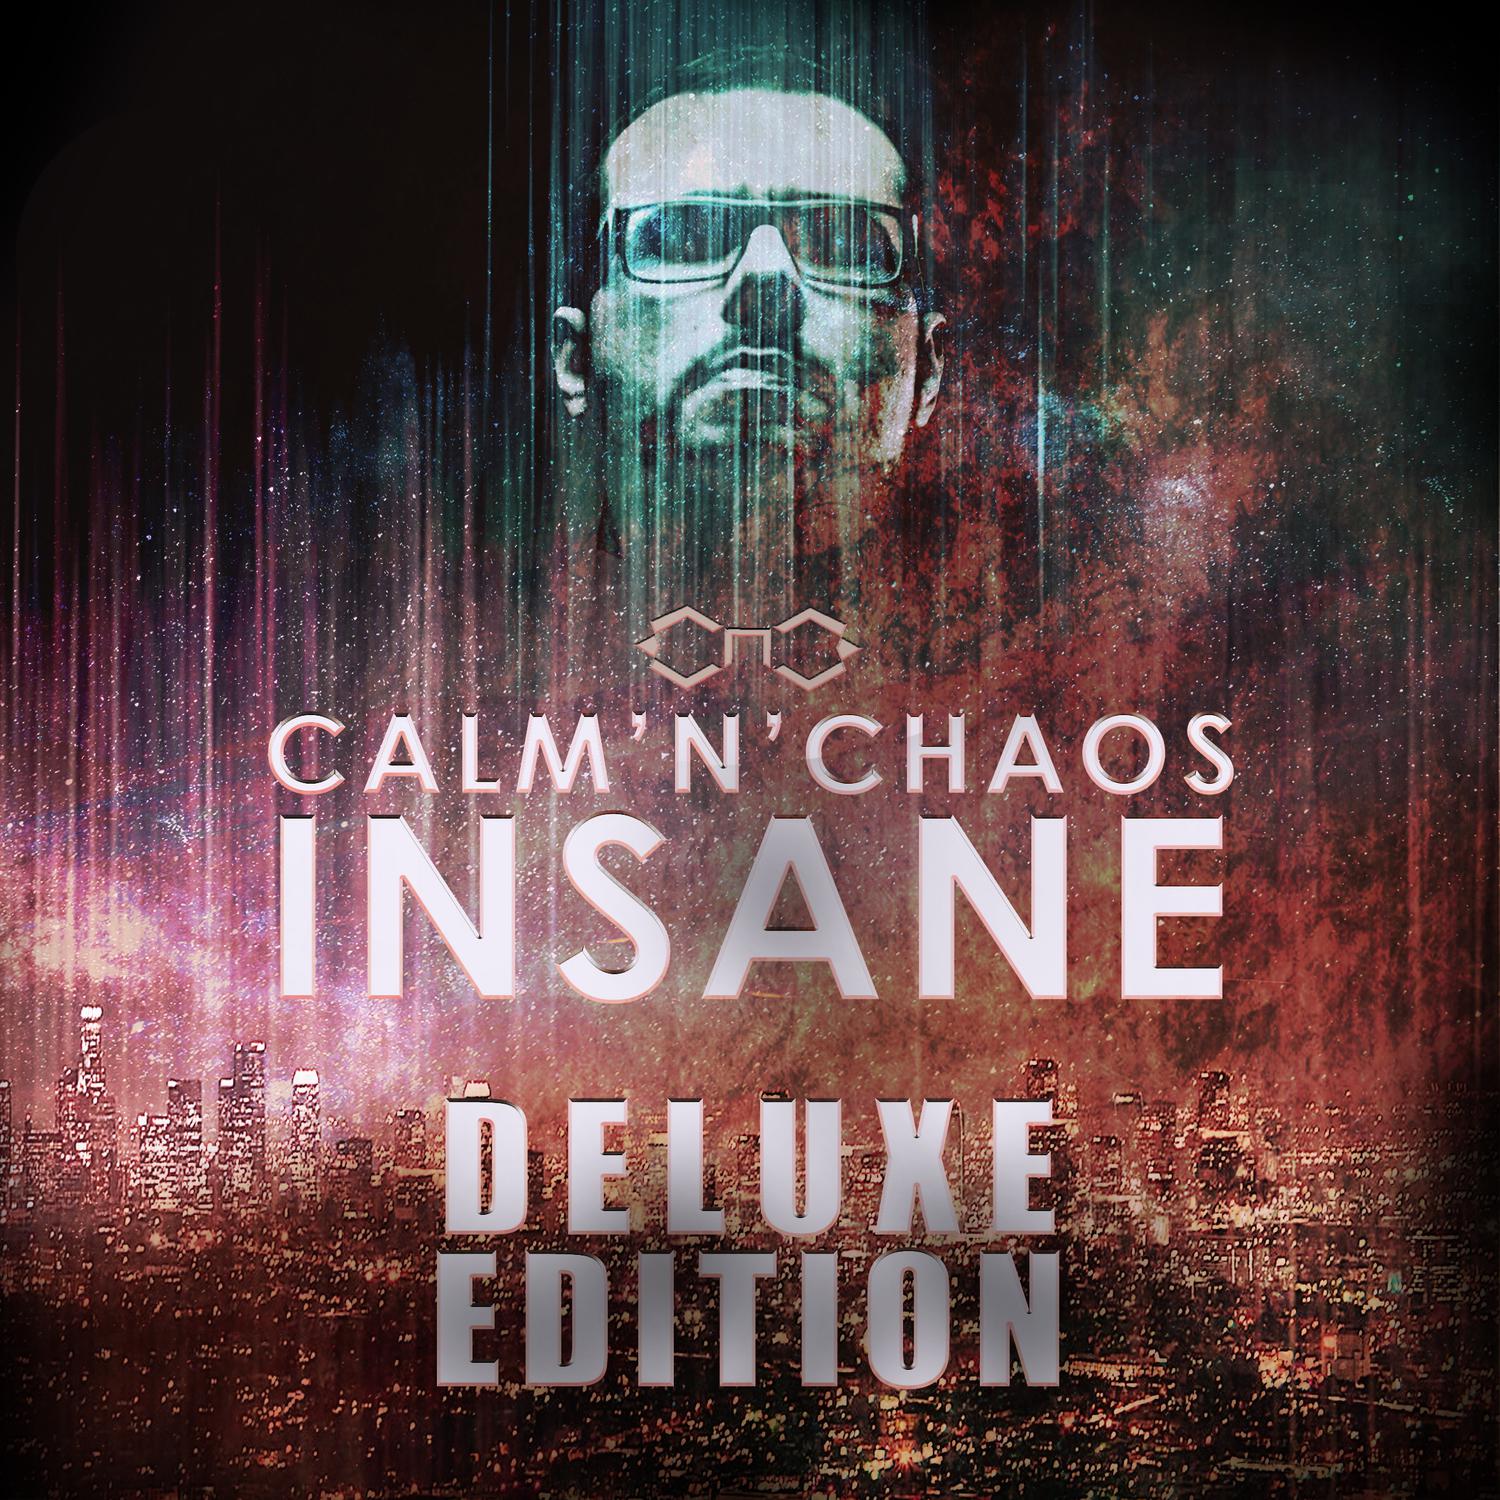 Insane (XP8 Remix)